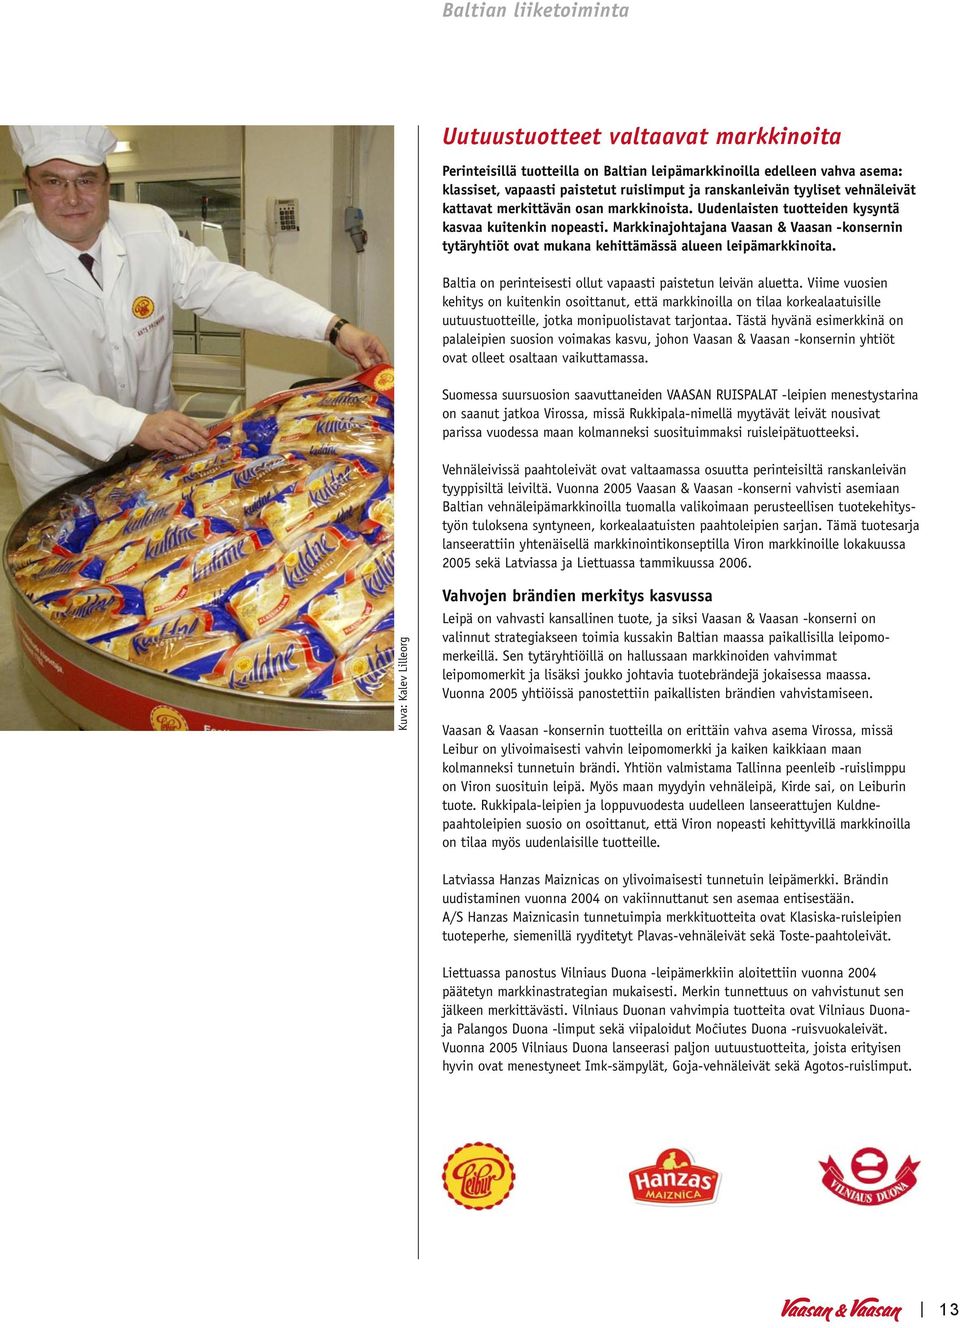 Markkinajohtajana Vaasan & Vaasan -konsernin tytäryhtiöt ovat mukana kehittämässä alueen leipämarkkinoita. Baltia on perinteisesti ollut vapaasti paistetun leivän aluetta.